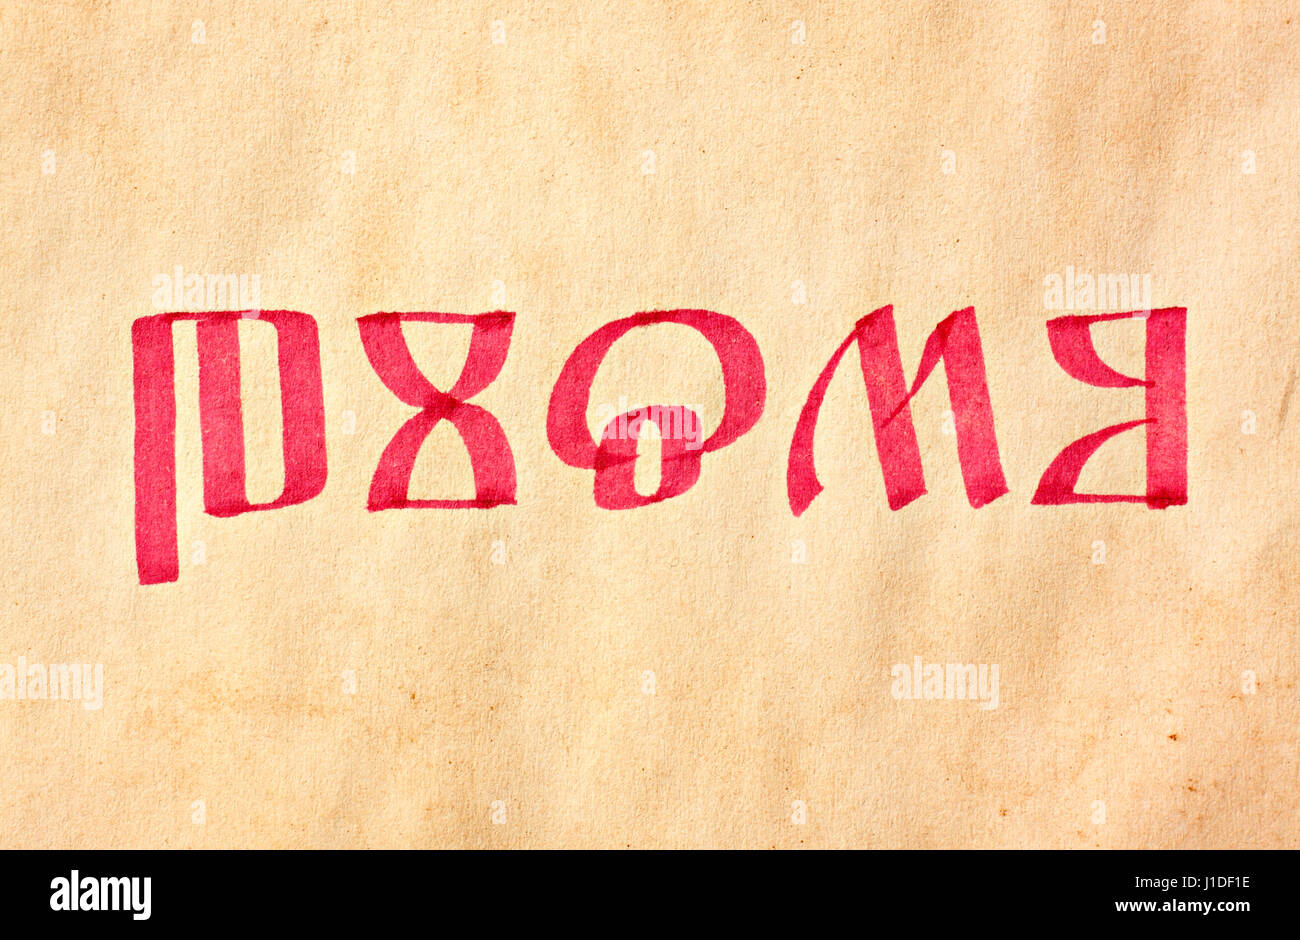 Parola manoscritta pismo (scrittura, polacco o russo, script glagolitico) sulla carta invecchiato Foto Stock